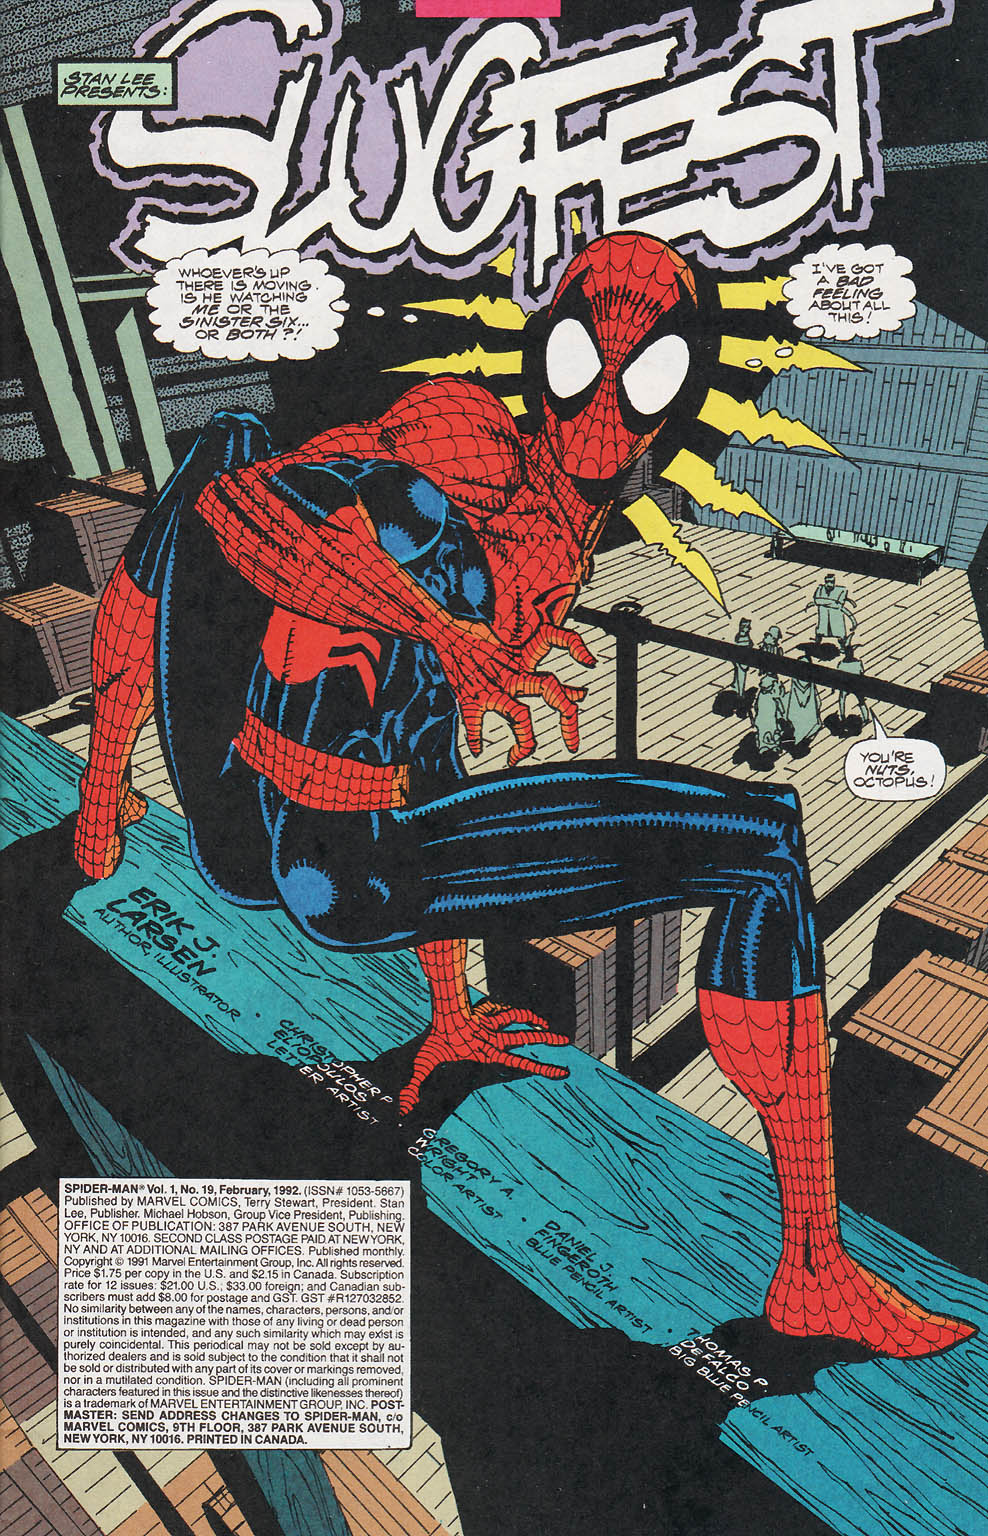 Spider-Man (1990) 19_-_Slugfest Page 1